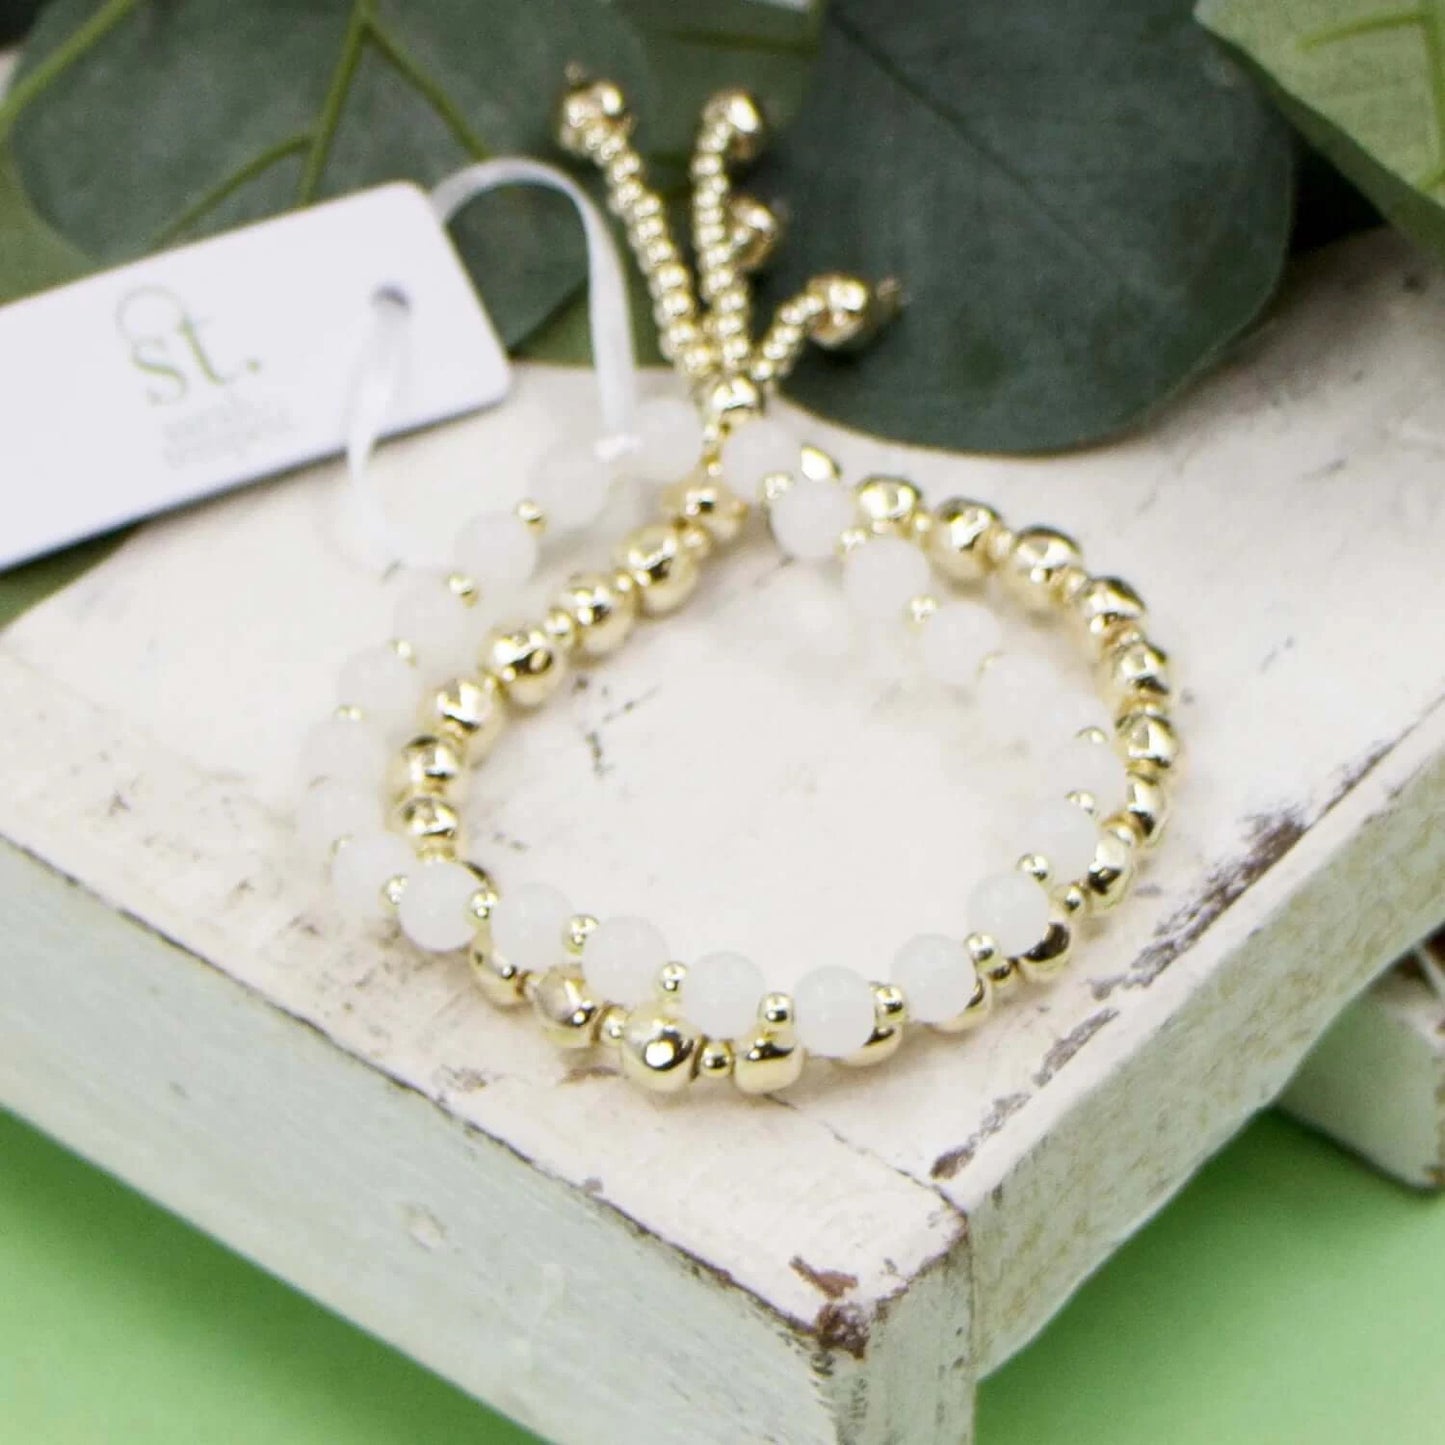 Double strand beaded bracelet with glass beads & beaded tassel